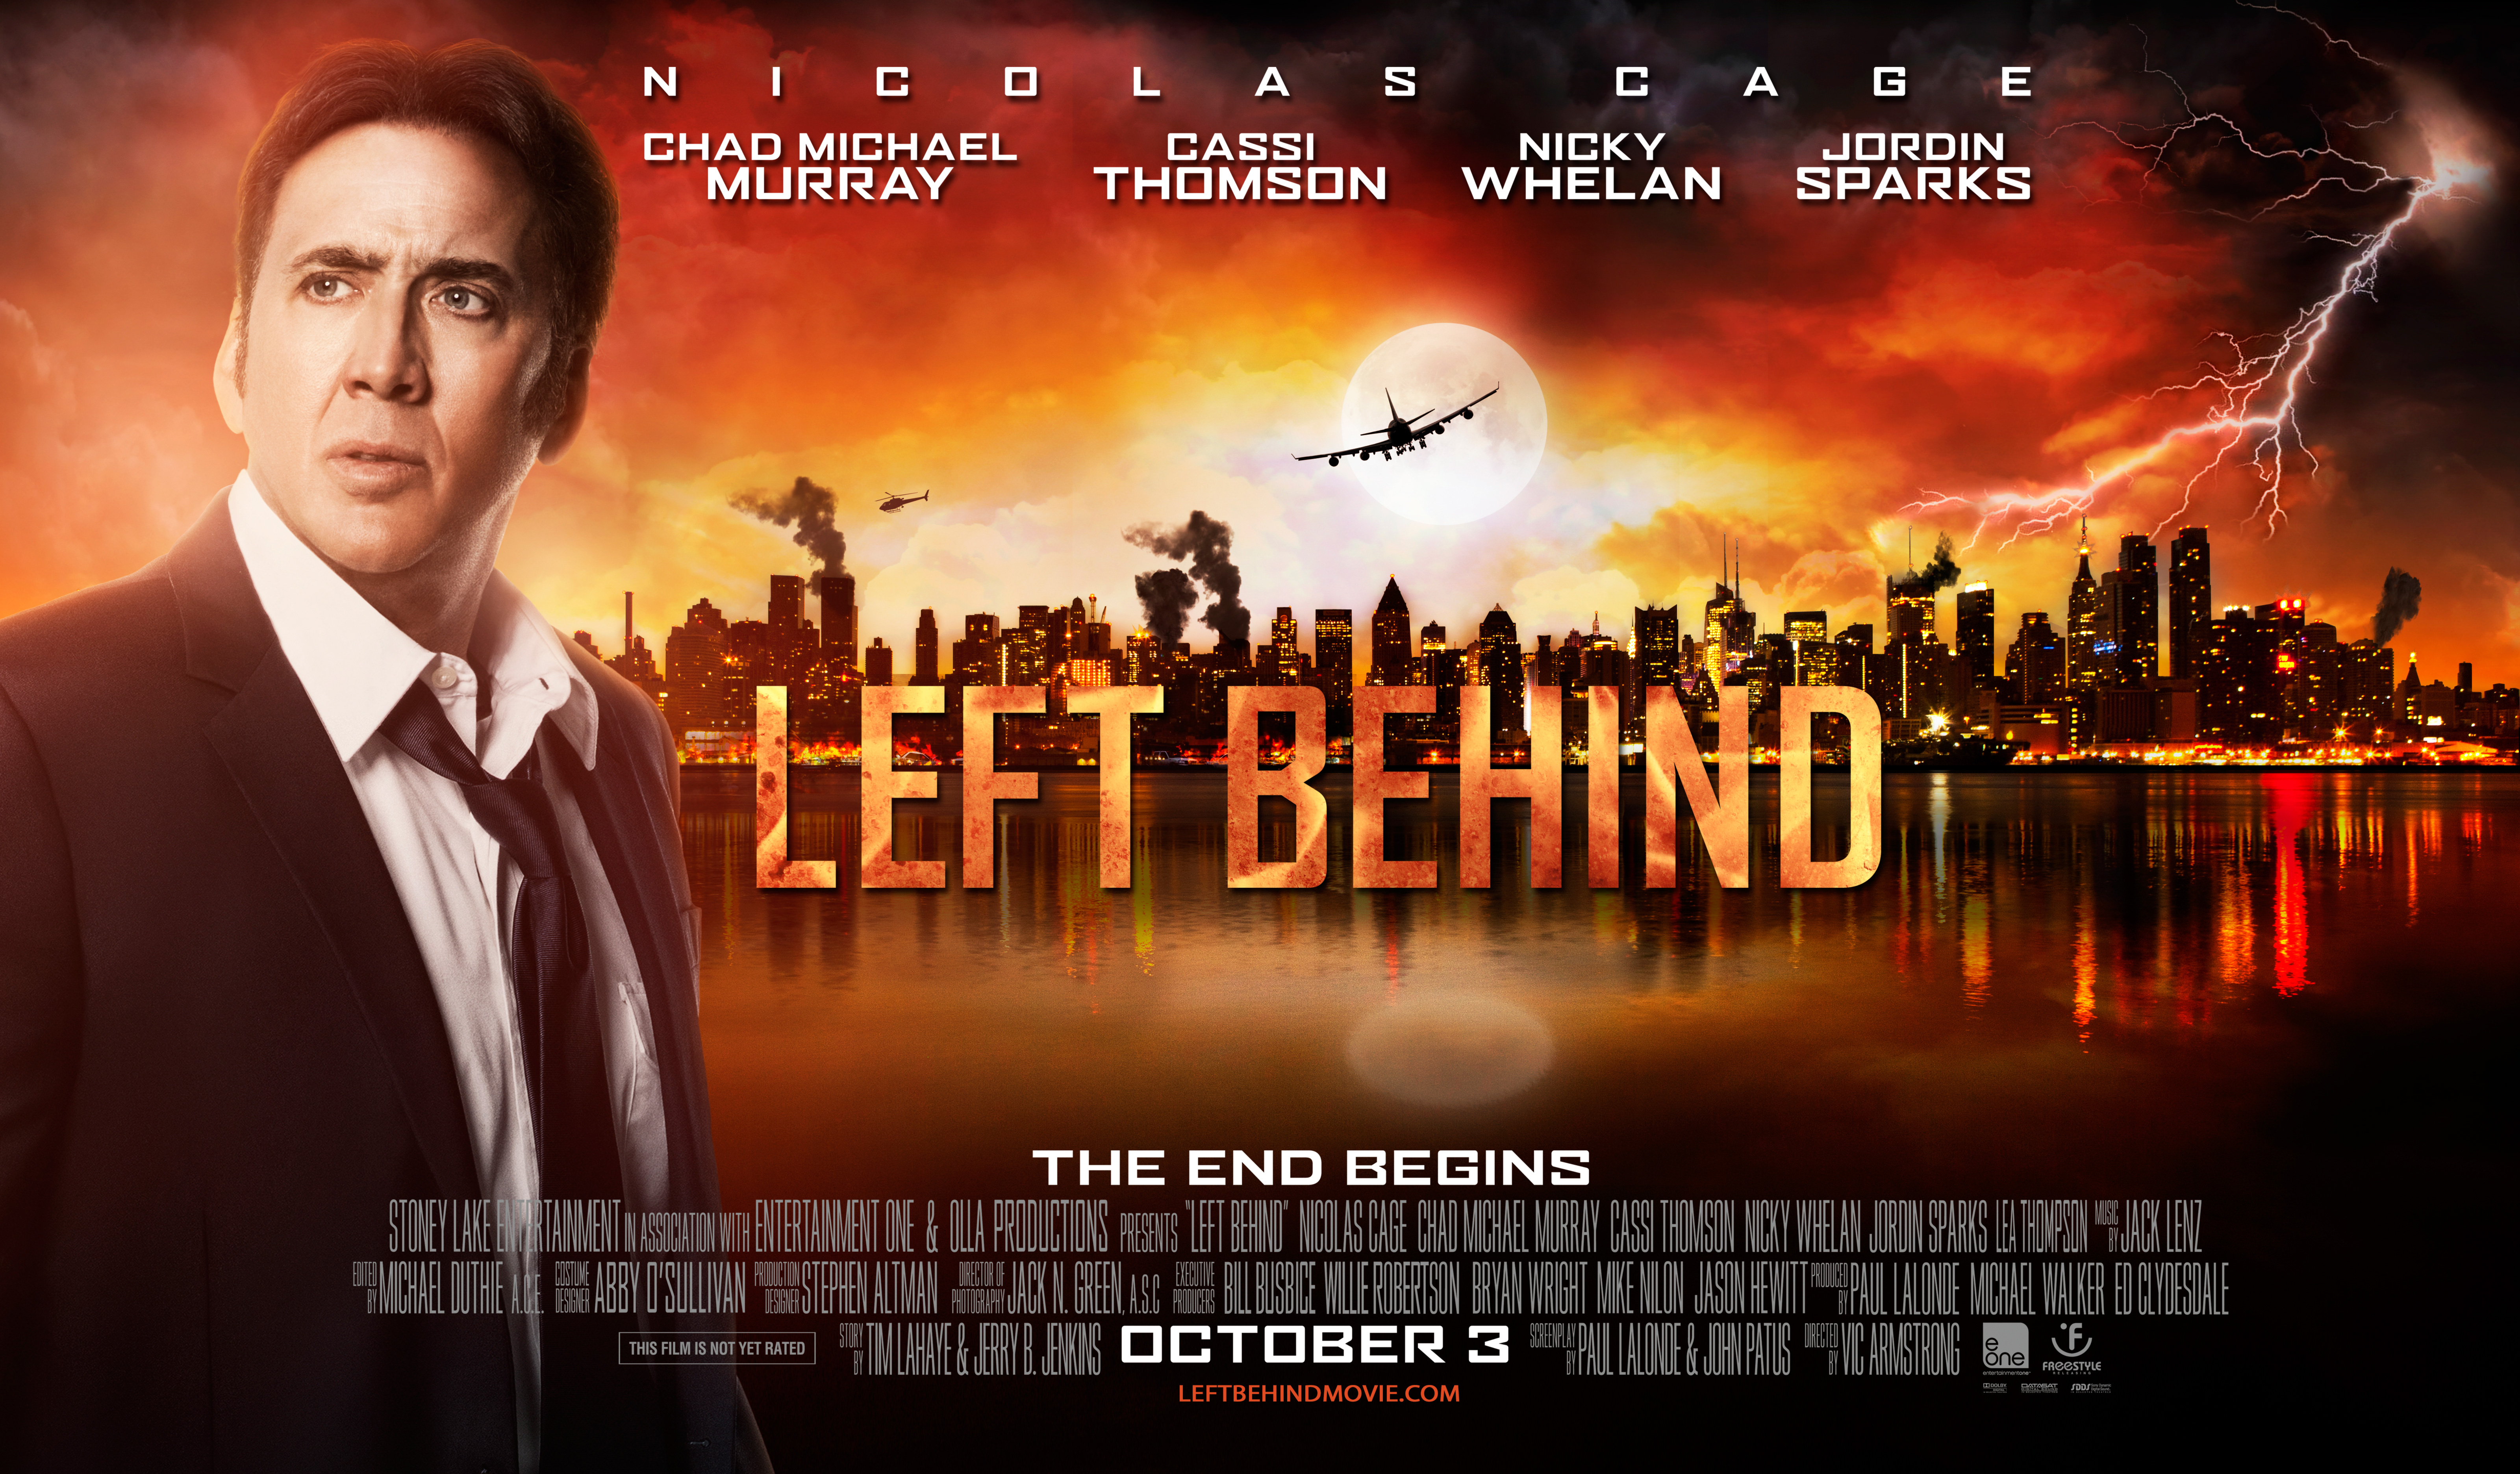 Left Behind (2014)dvdplanetstorepk